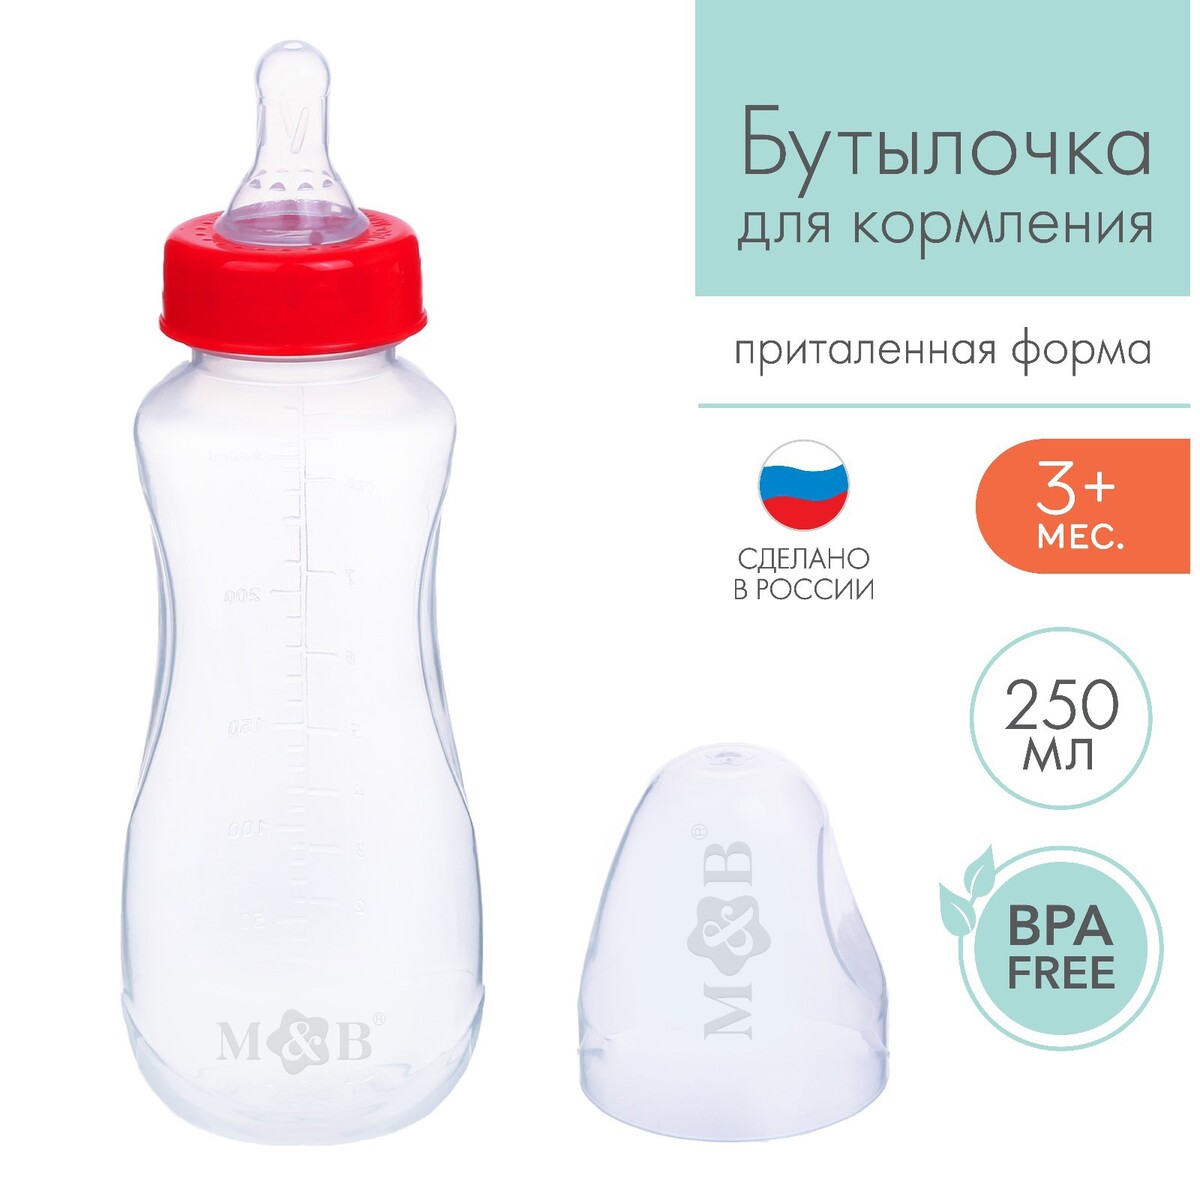 Бутылочка для кормления, классическое горло, приталенная, 250 мл., от 3 мес., цвет красный бутылочка для кормления mum